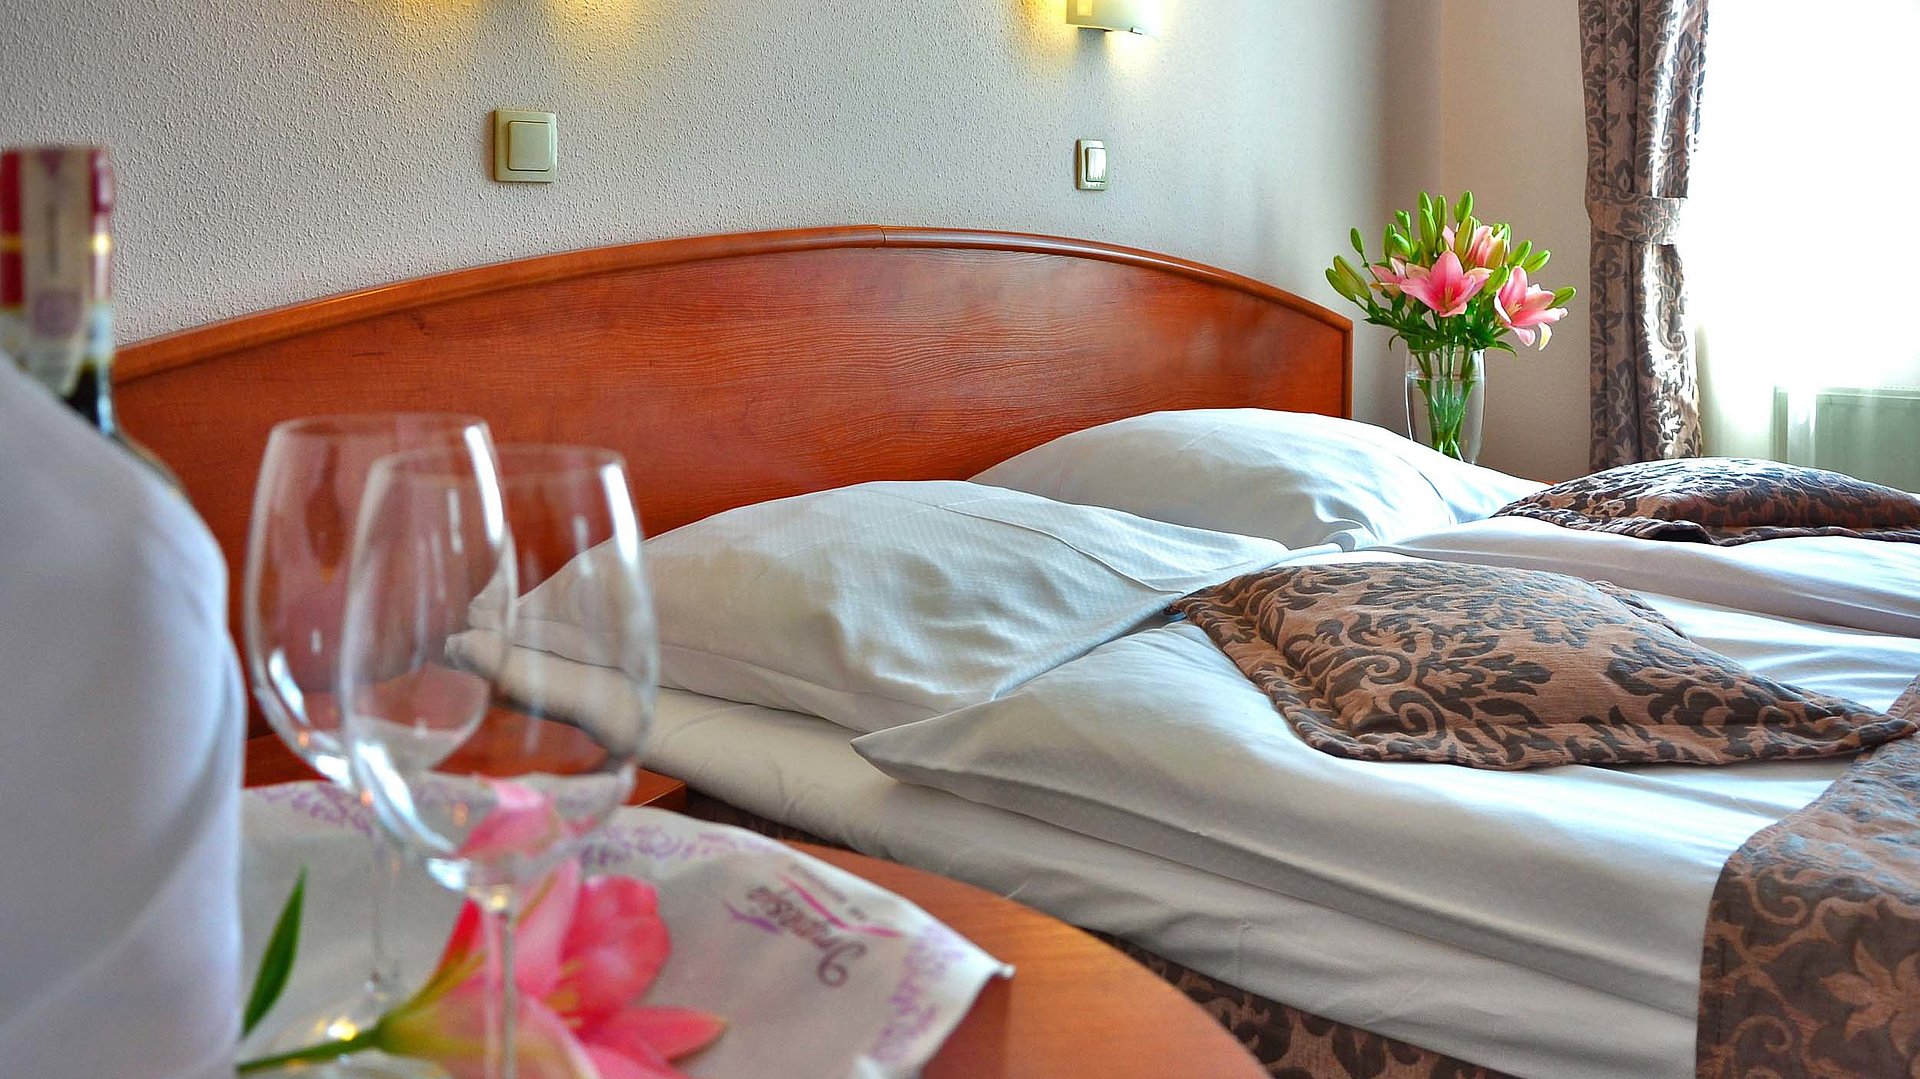 Pauschalangebote während der Woche für Unterkünfte in der Fränkischen Schweiz - Fokus auf sehr ordentliches Hotelbett; zwei Weingläser im Vordergrund und Blumen auf dem Nachttisch im Hintergrund 